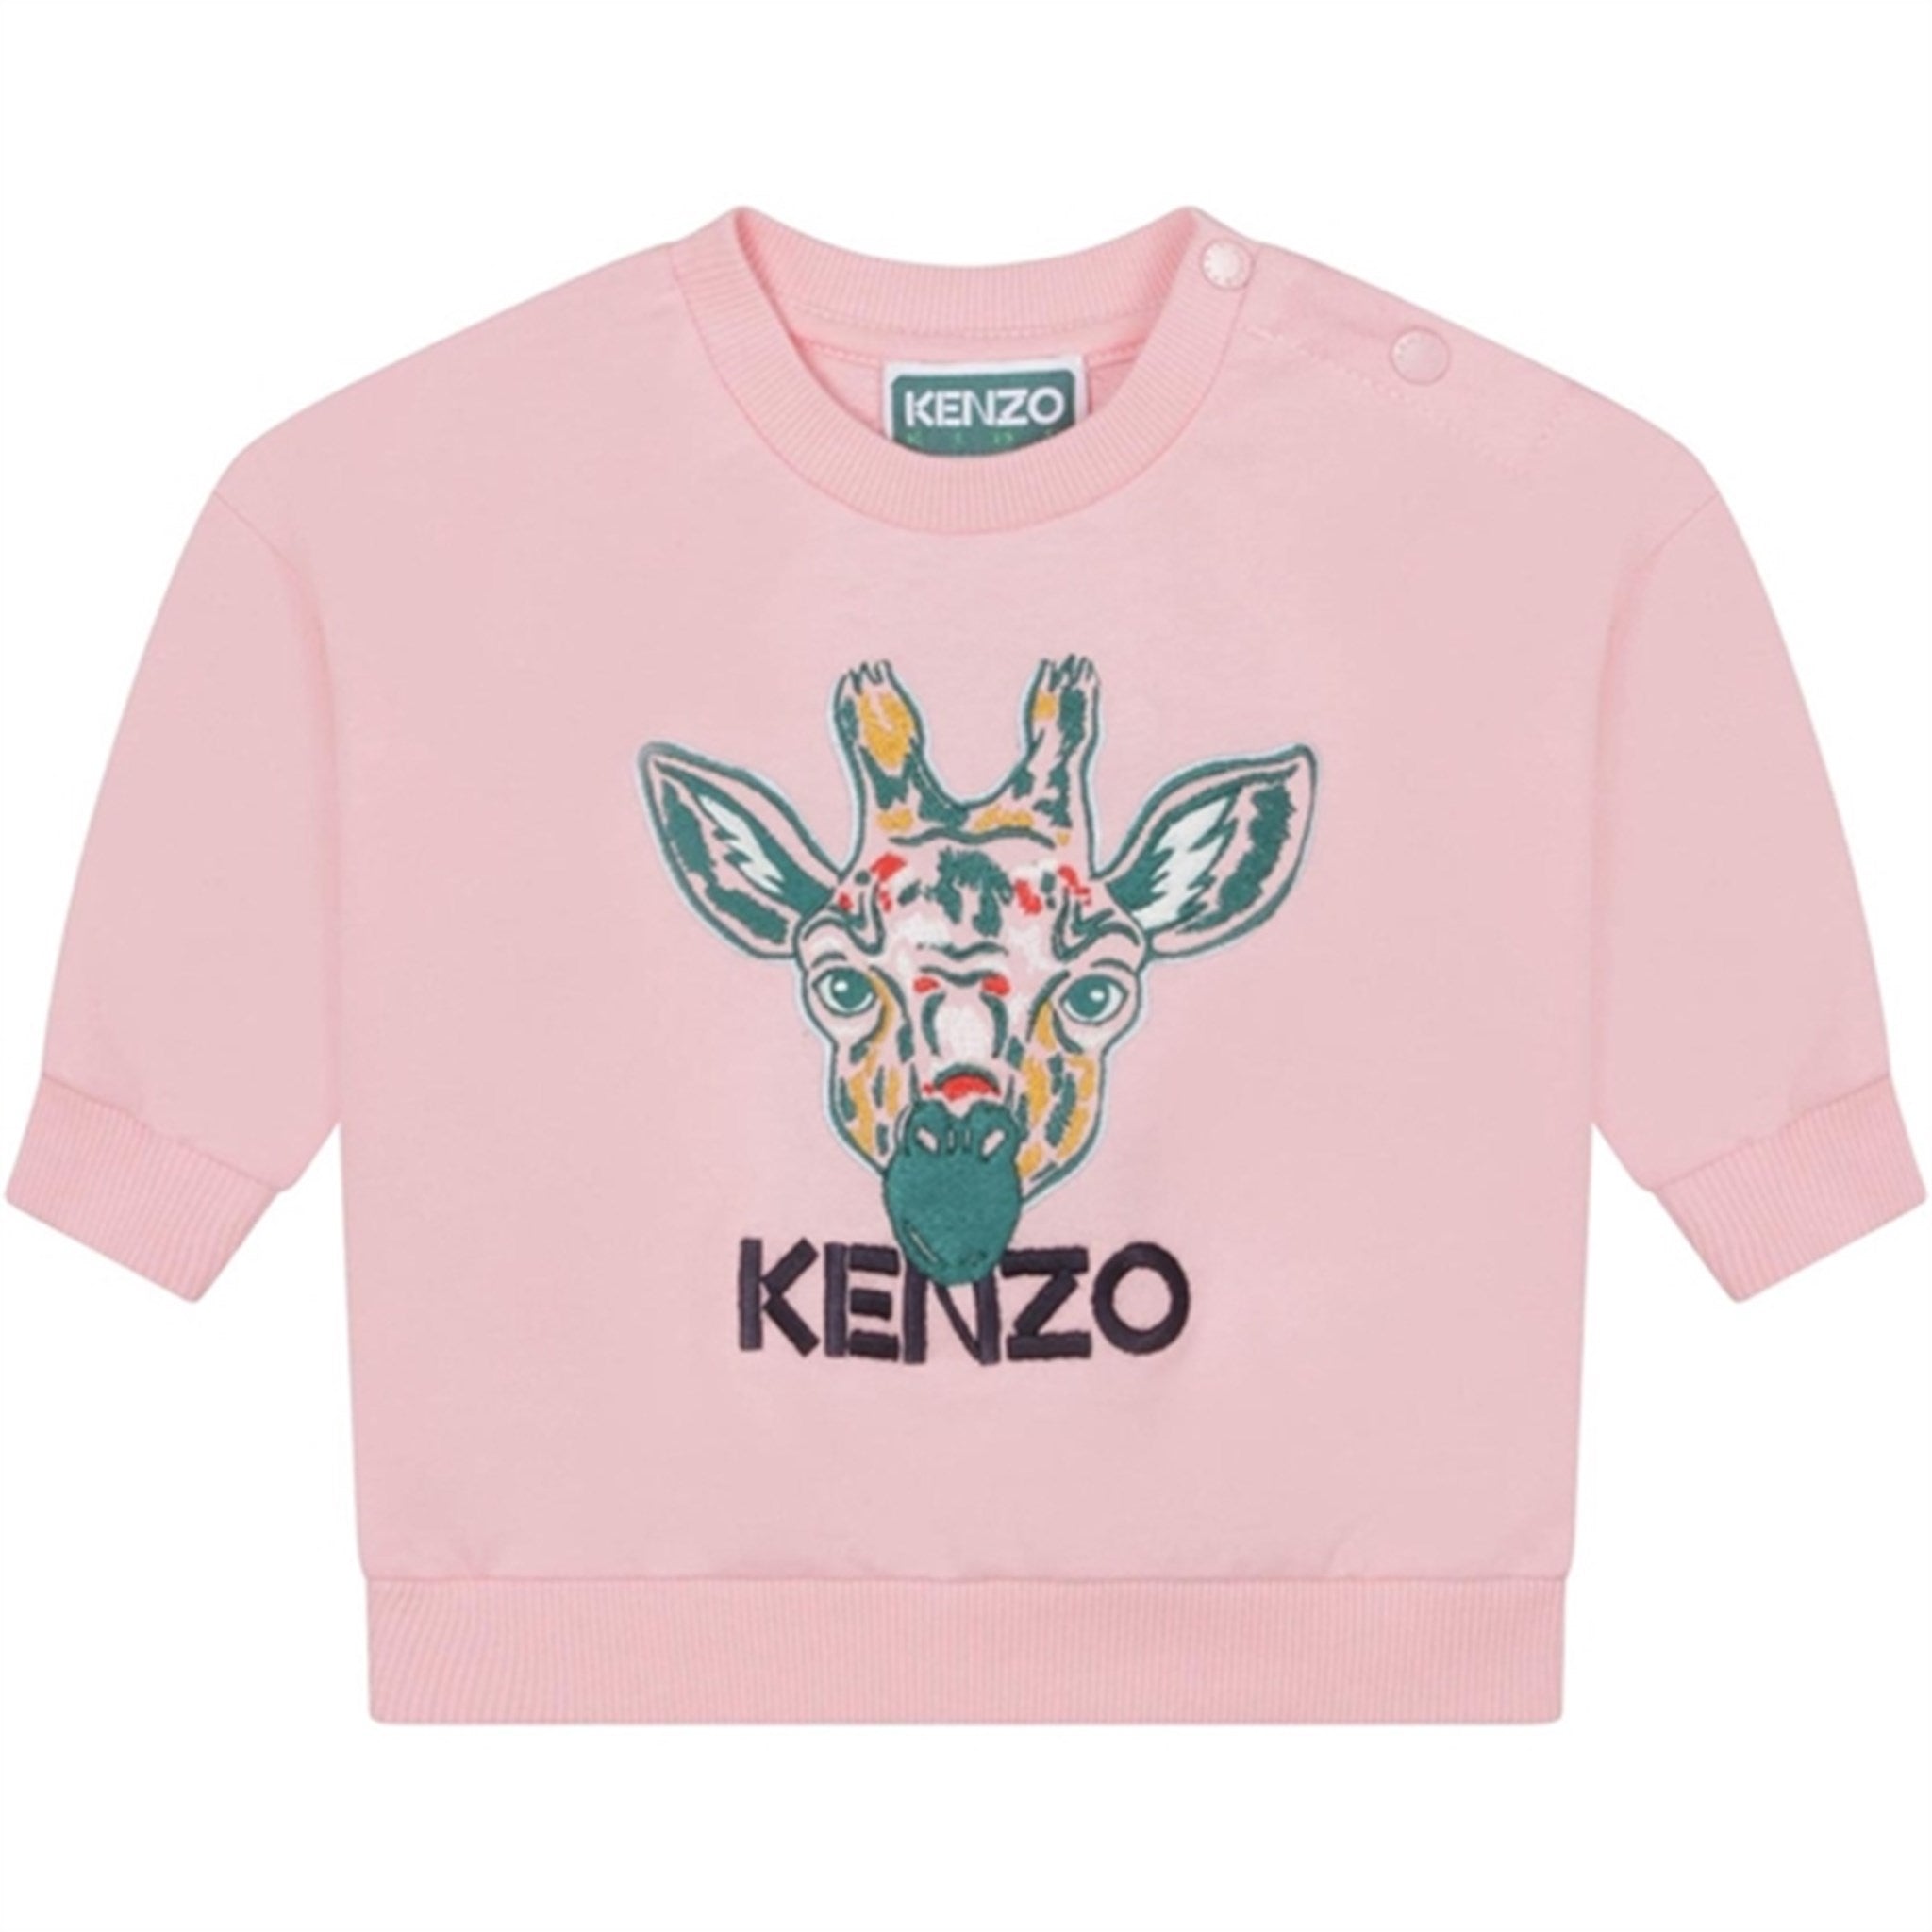 Kenzo Baby Sweatshirt Pink